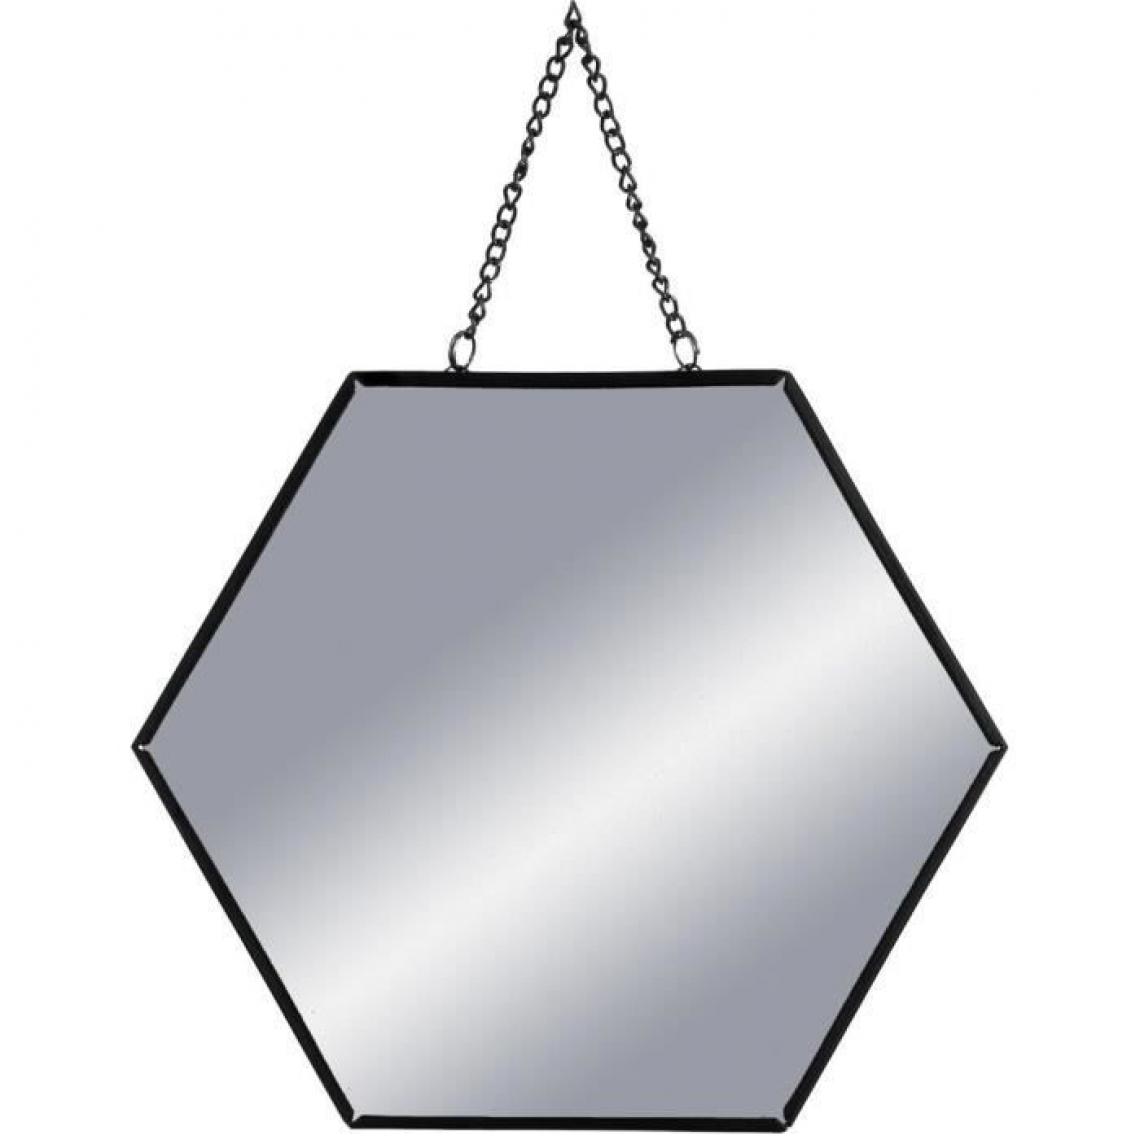 Icaverne - MIROIR Set de 3 Miroirs hexagonaux a suspendre en métal - Noir - Miroir de salle de bain